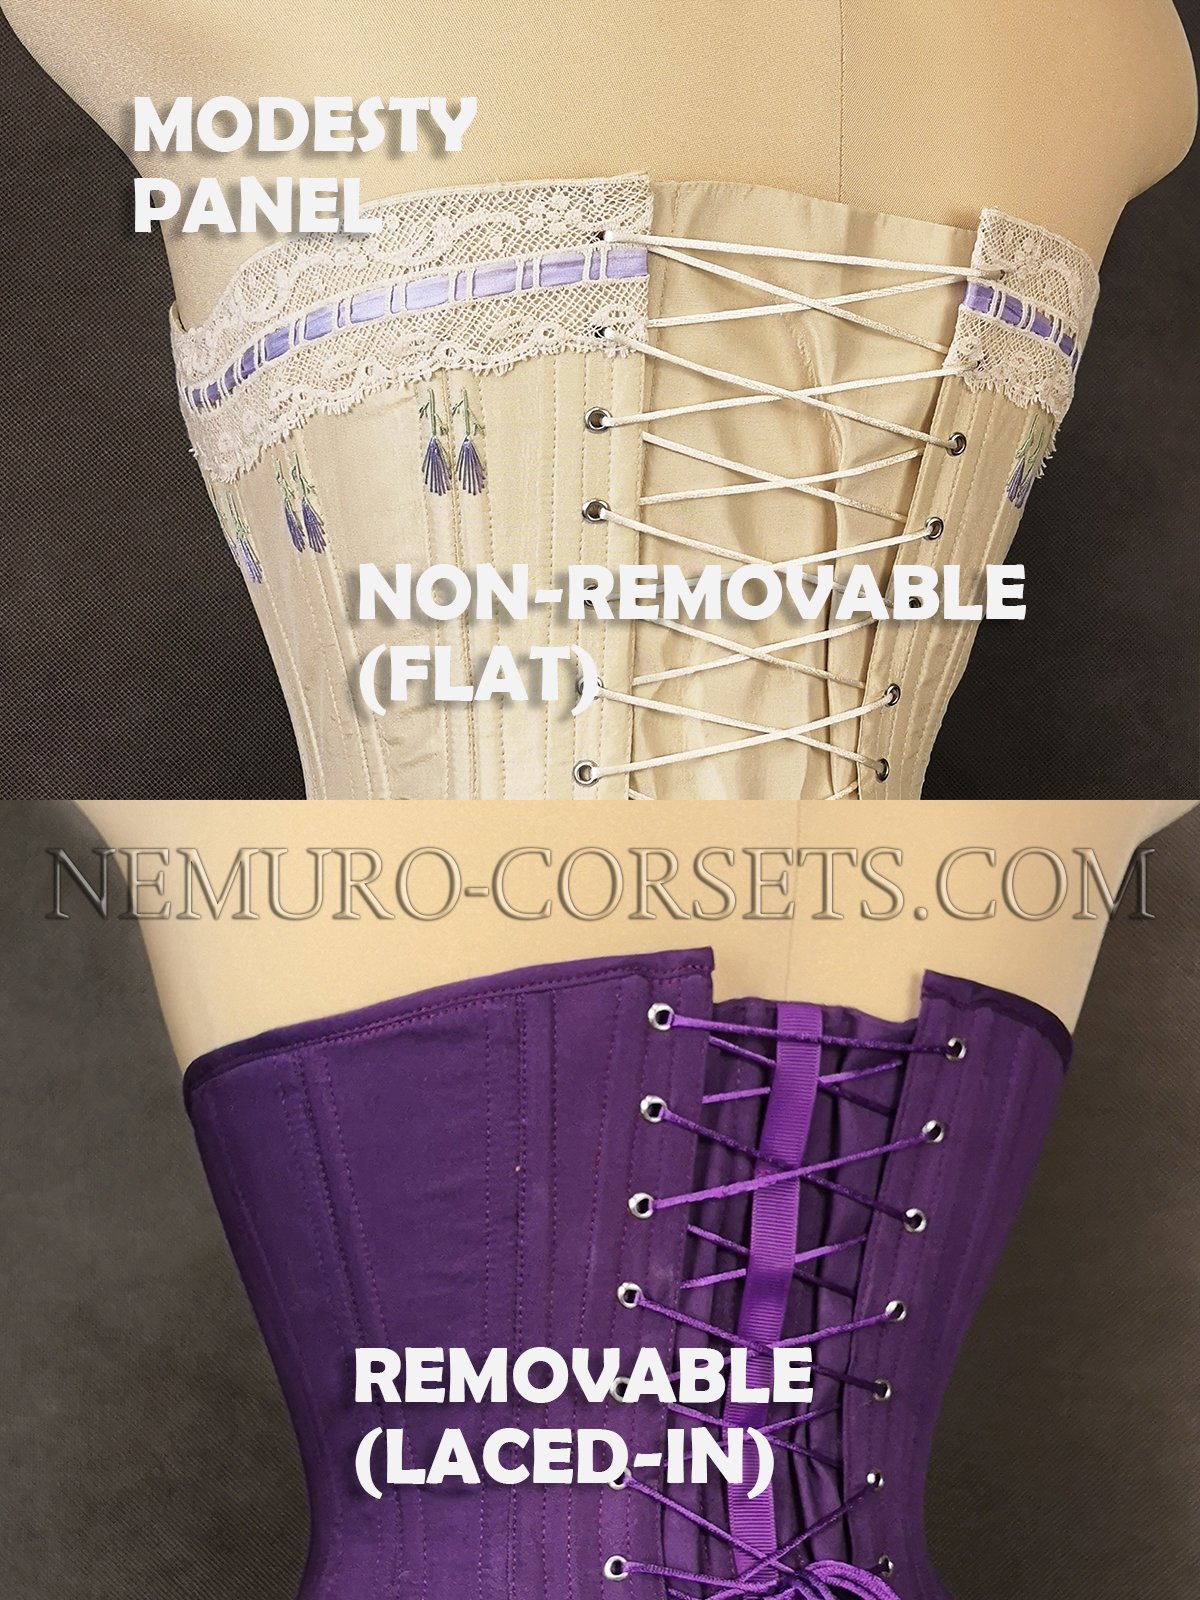 https://nemuro-corsets.com/cdn/shop/products/panel_784d7453-a4e3-431f-8304-0c7ff6862234_1024x1024@2x.jpg?v=1688182801